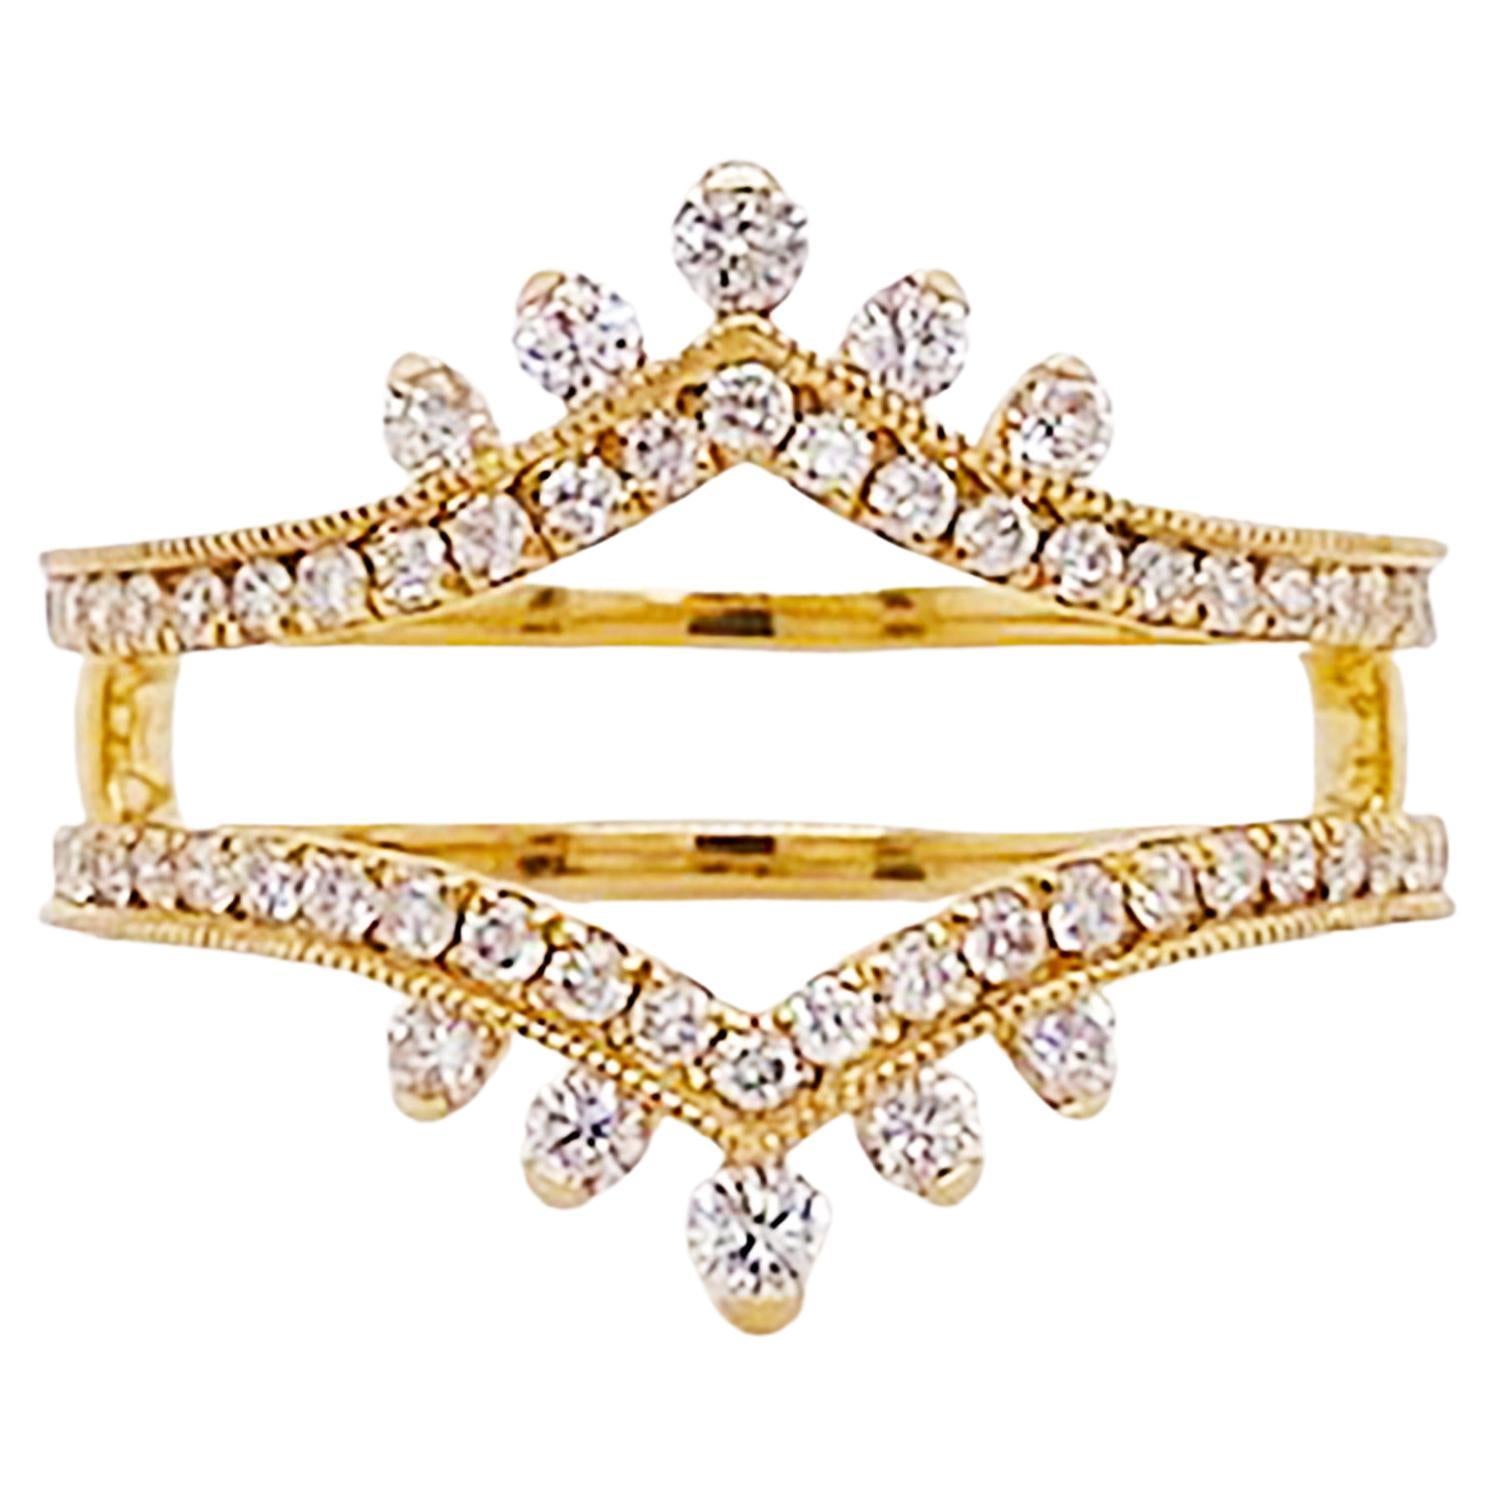 Diamond Crown Ring Enhancer 14K Gold .55 Carat Diamond Ring Guard Wedding Band